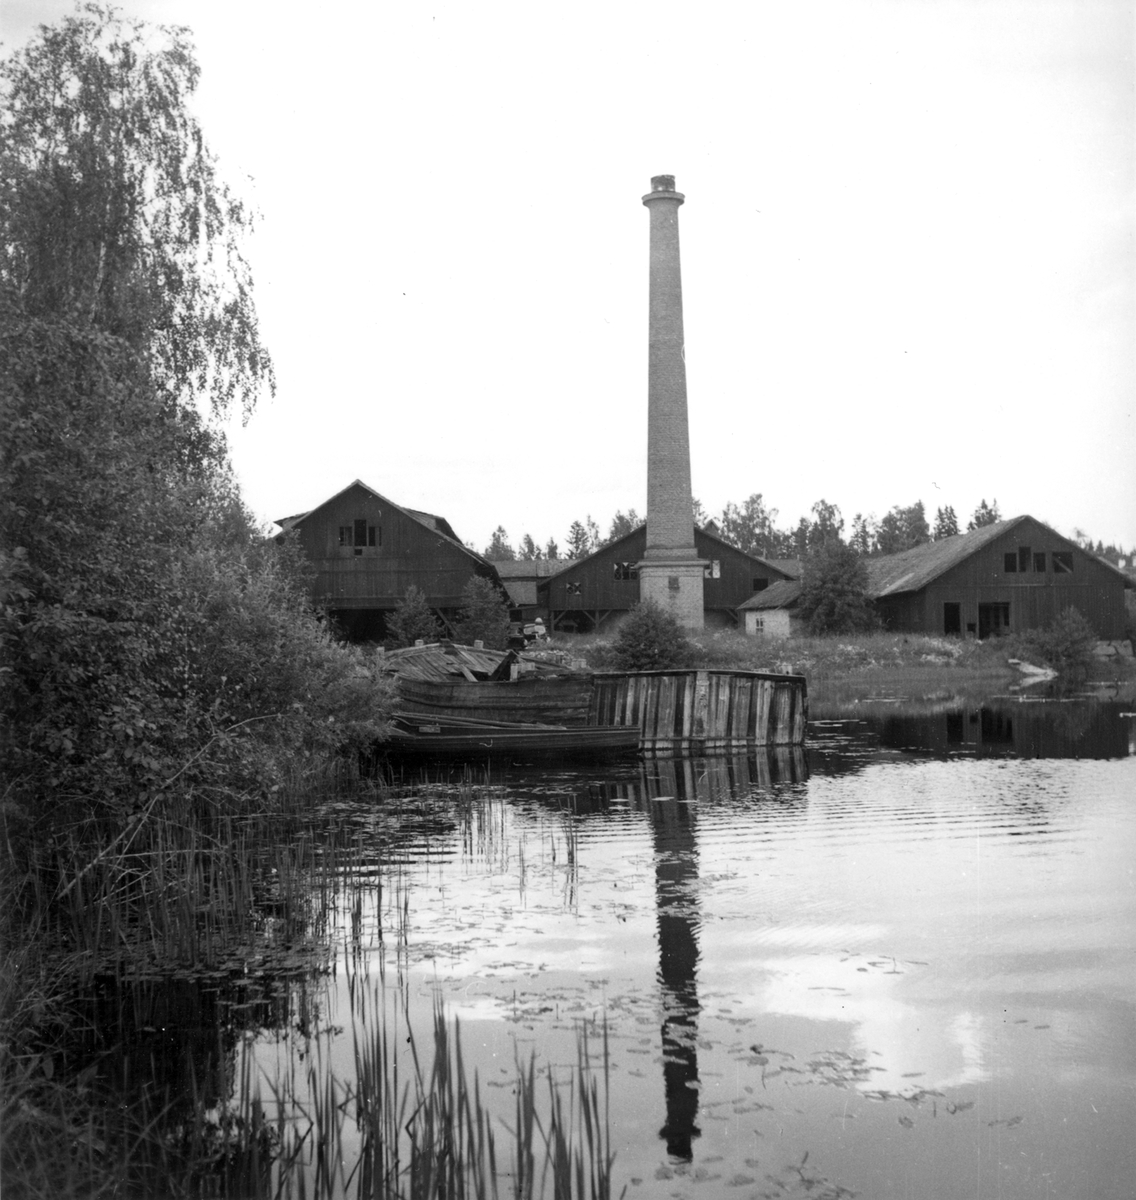 SVEA omändrades till pråm omkring 1912. Ligger nu (1944)som vrak i hamnbassängen till Kvarsnäs tegelbruk, Söderbärke sn, och äges av lantbr. Einar Jansson, Vibberbo